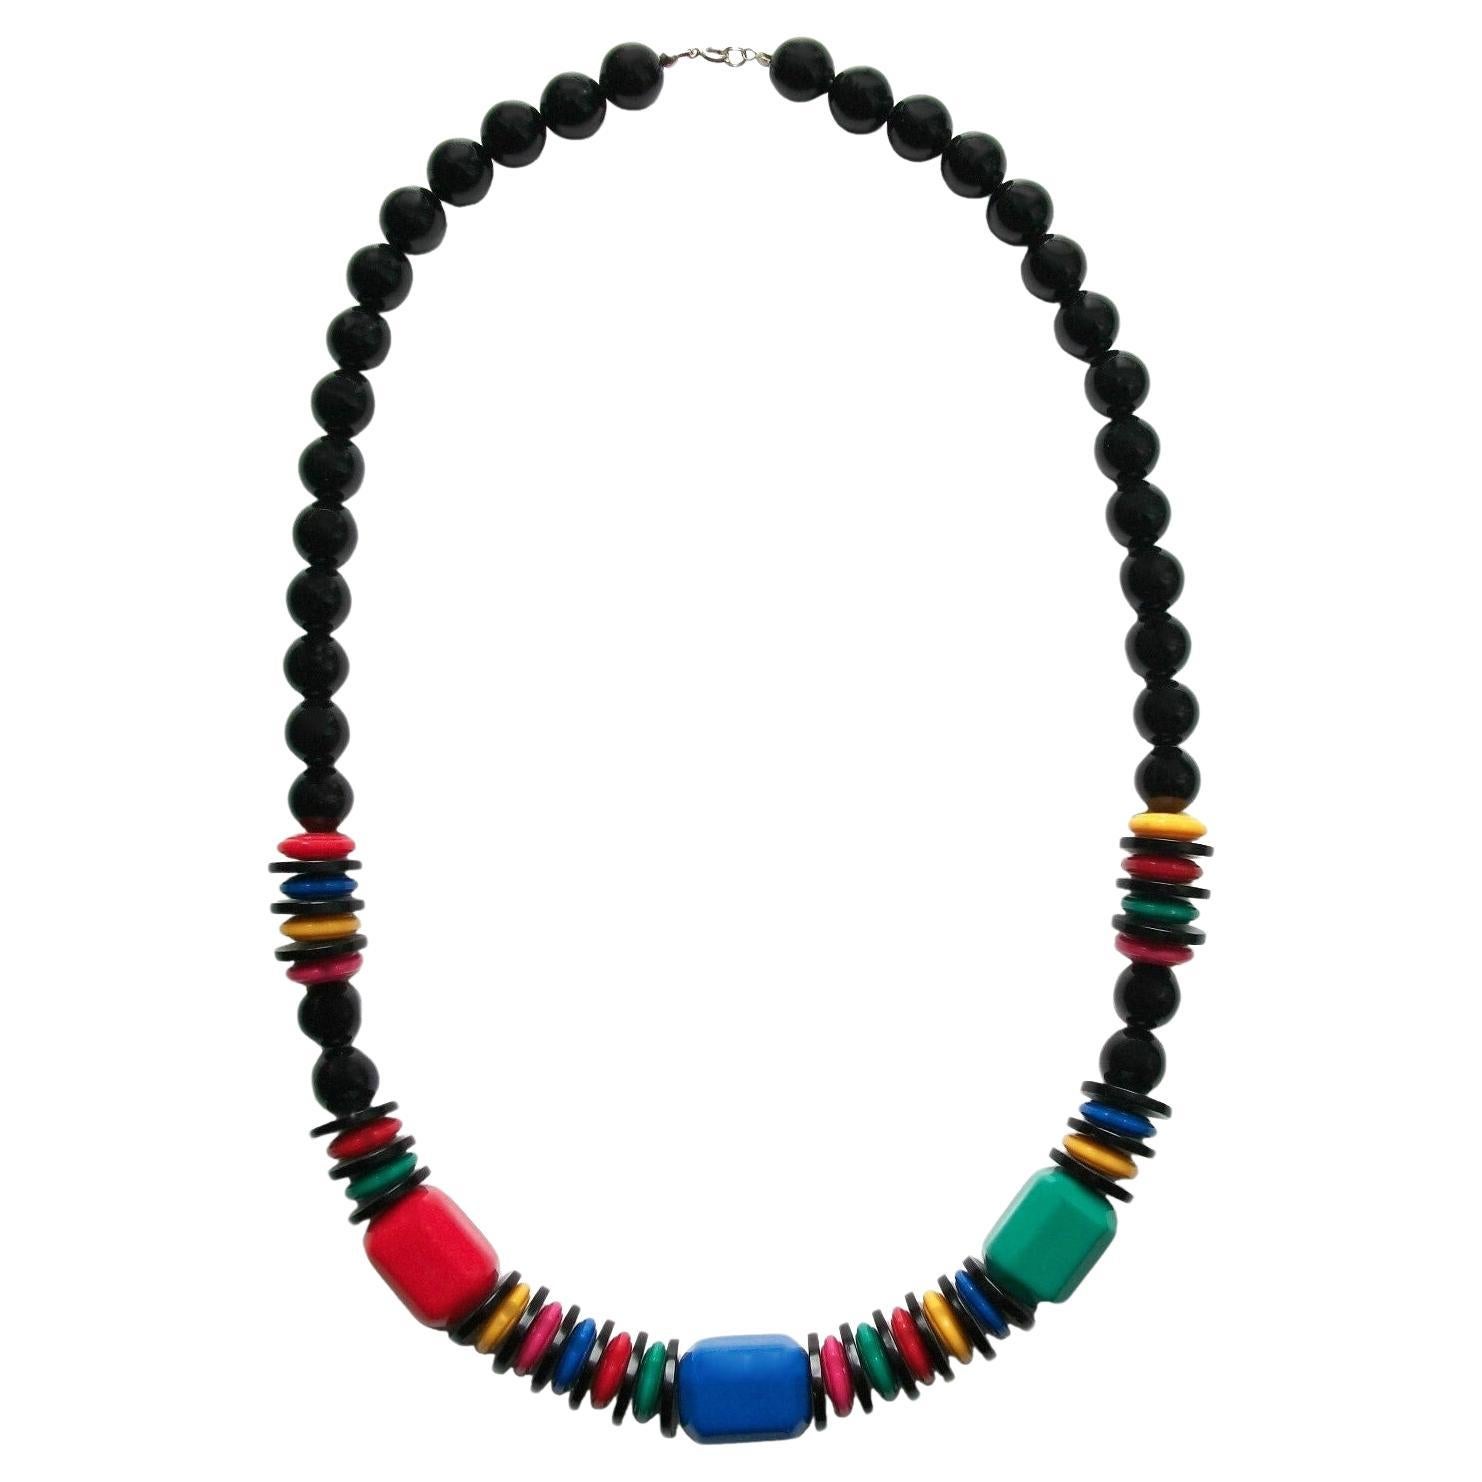 Collier vintage en perles acryliques multicolores et noires - non signé - Circa 1980's